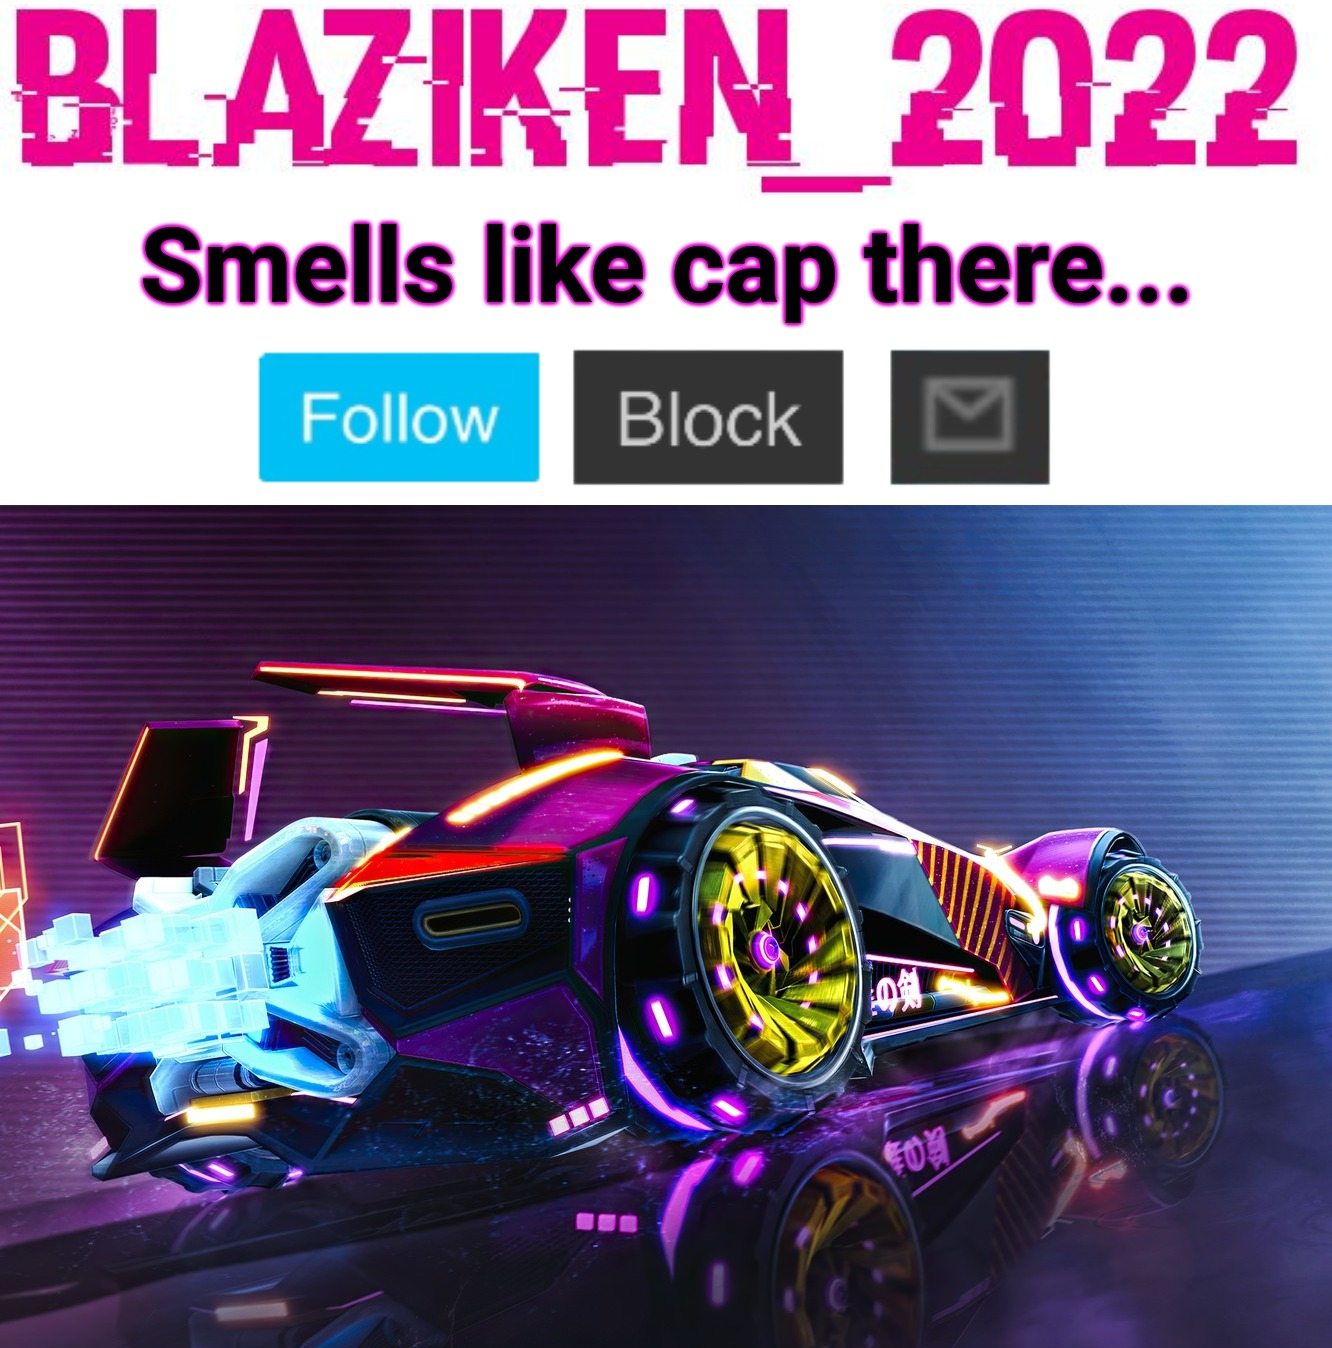 Blaziken_2022 announcement template Blank Meme Template